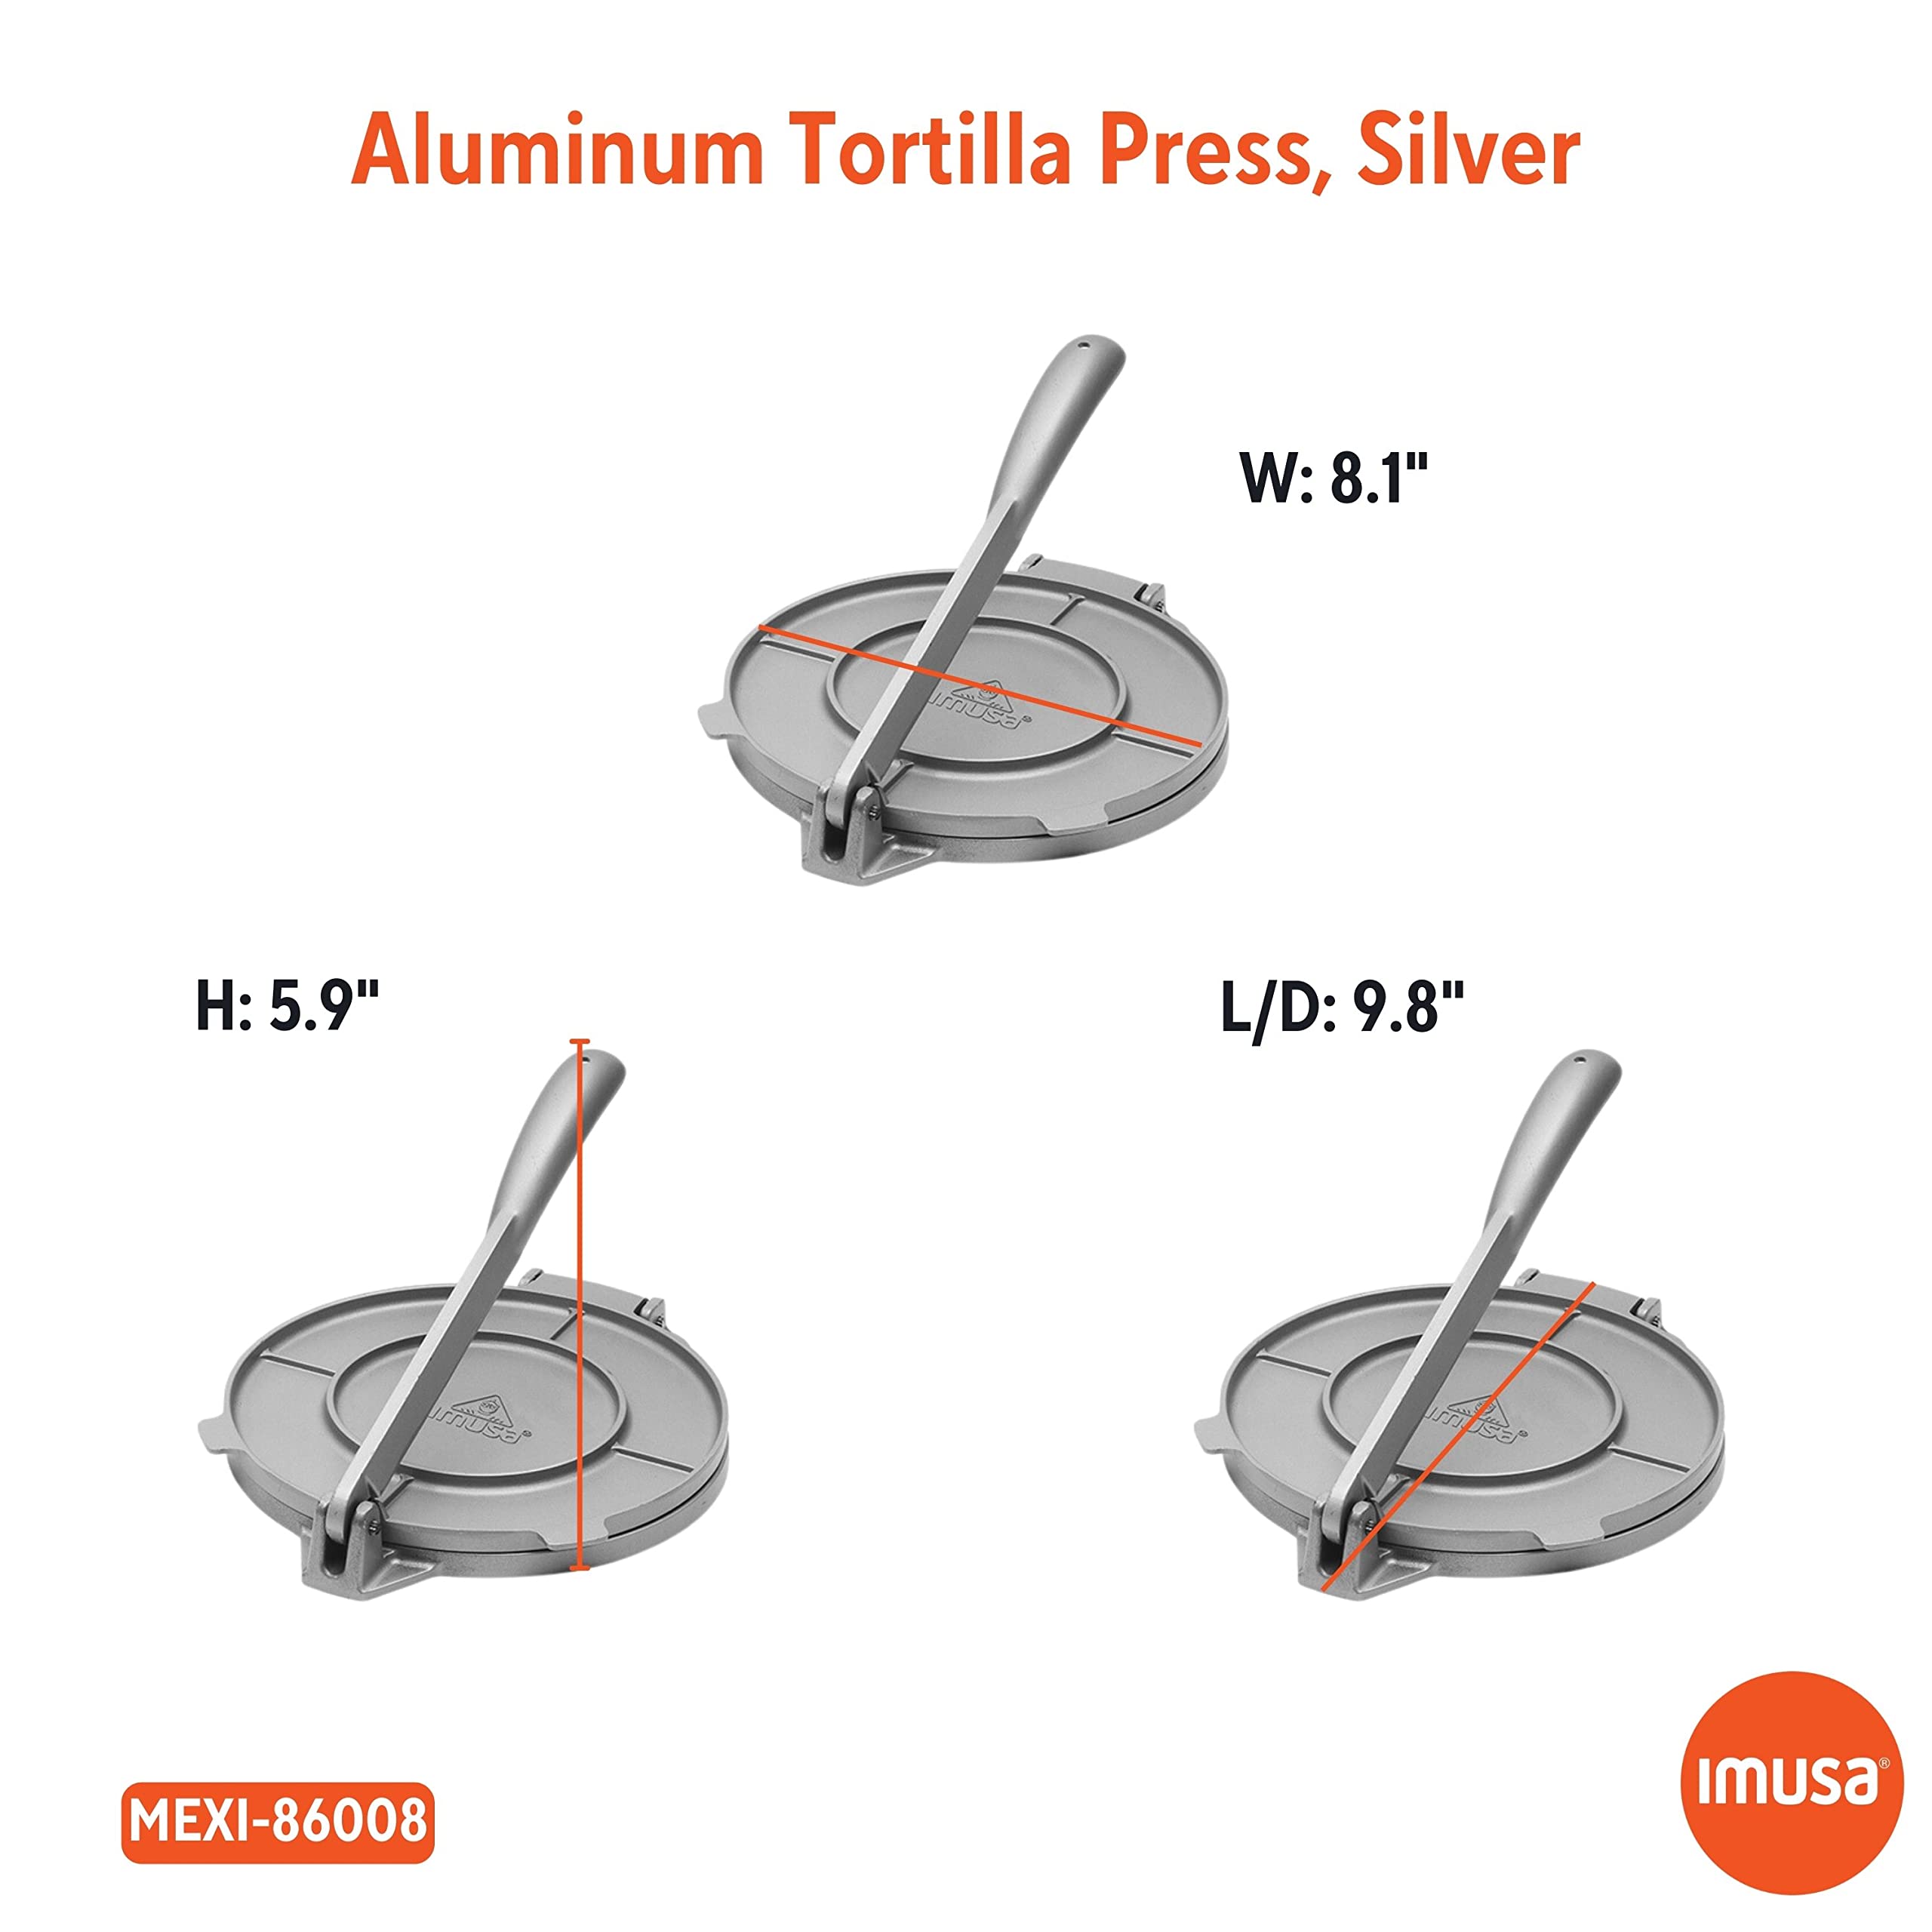 IMUSA USA 8-in. Aluminum Tortilla Press, 8 Inch, Silver